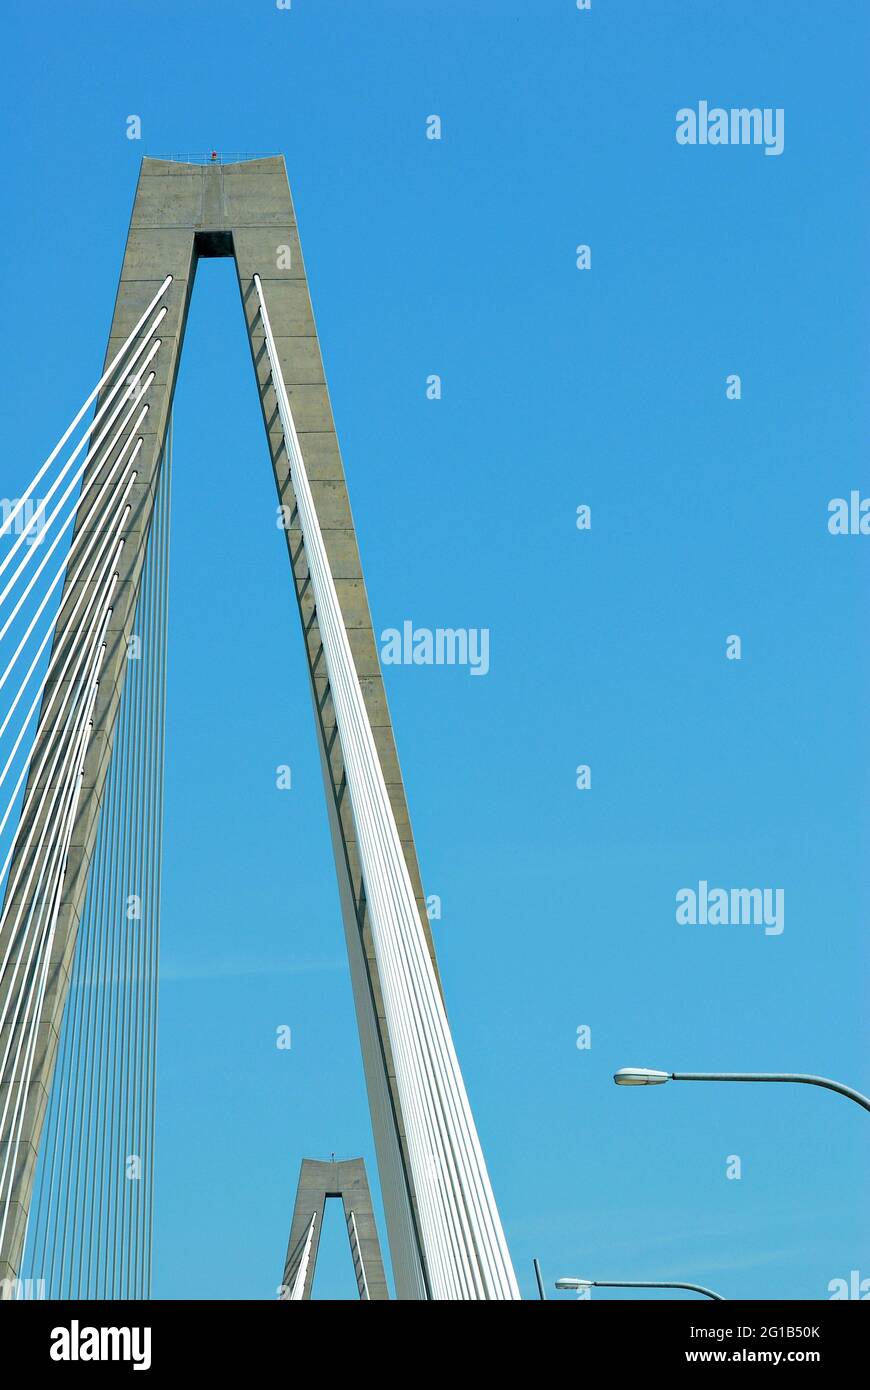 Die Cable-stay Arthur Ravenel Jr. Bridge, die das Stadtzentrum von Charleston, South Carolina, mit Mount Pleasant, South Carolina verbindet, wurde 2005 eröffnet. Stockfoto